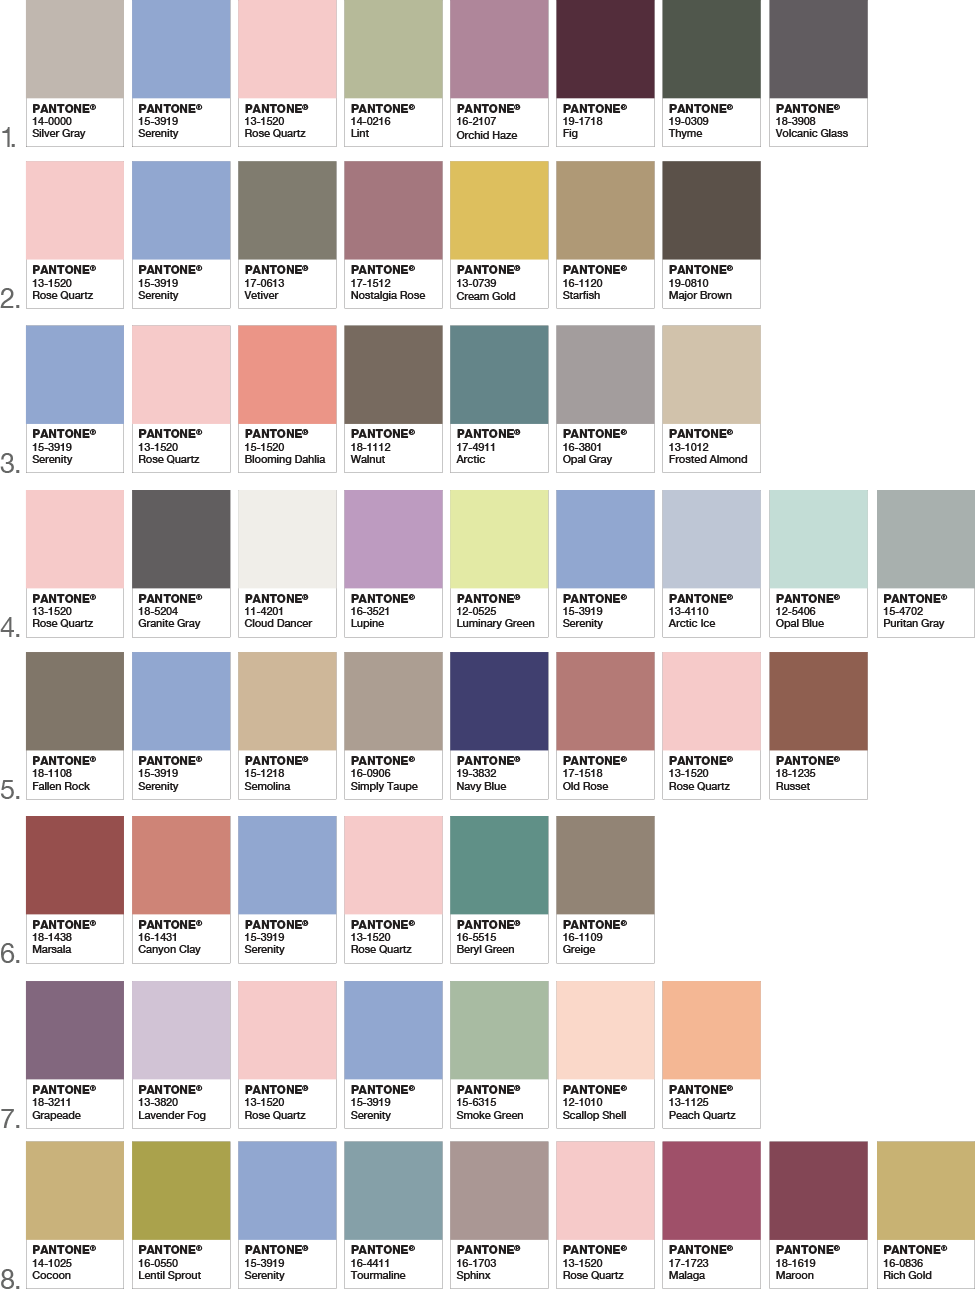 Dark Brown Pantone Color Chart